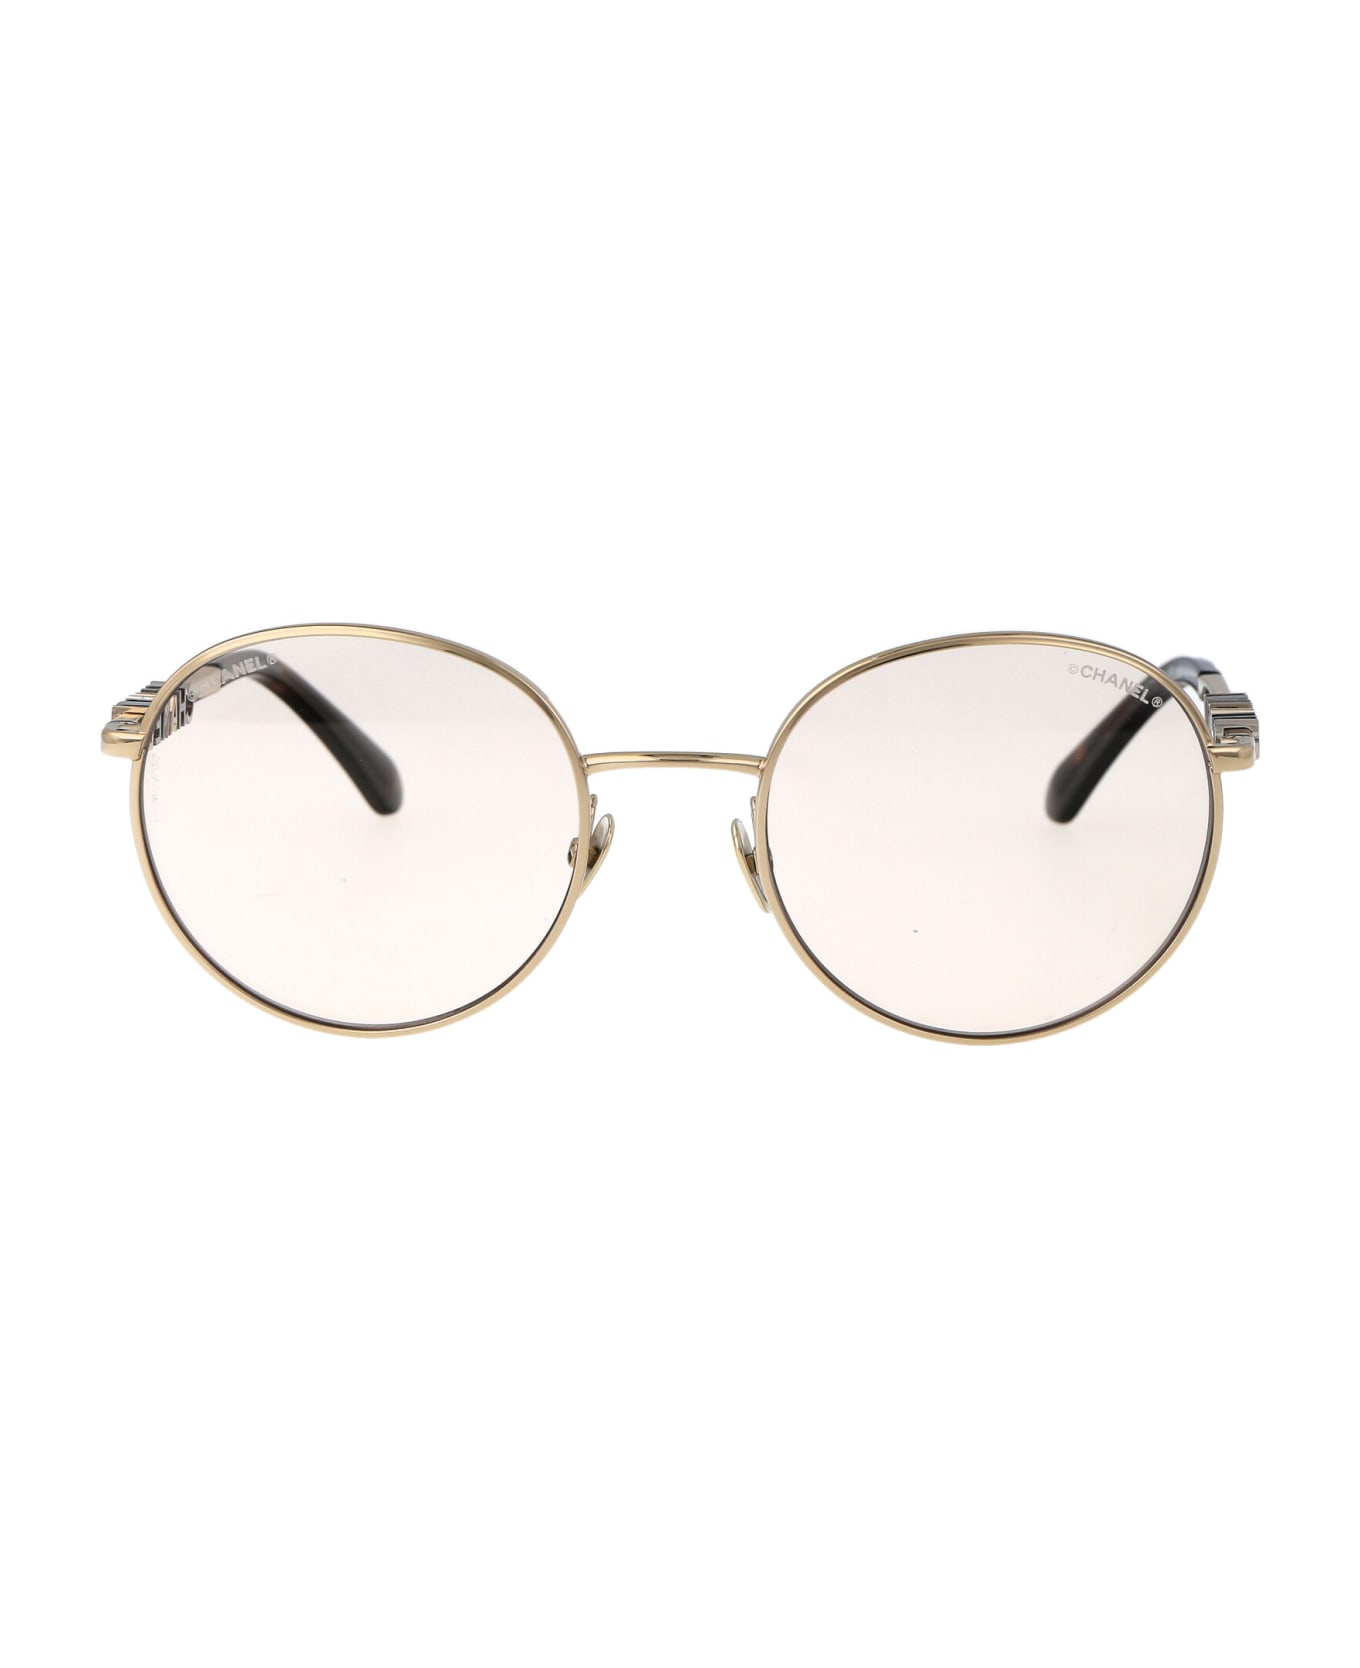 Chanel 0ch4282 Sunglasses - C485M4 GOLD サングラス